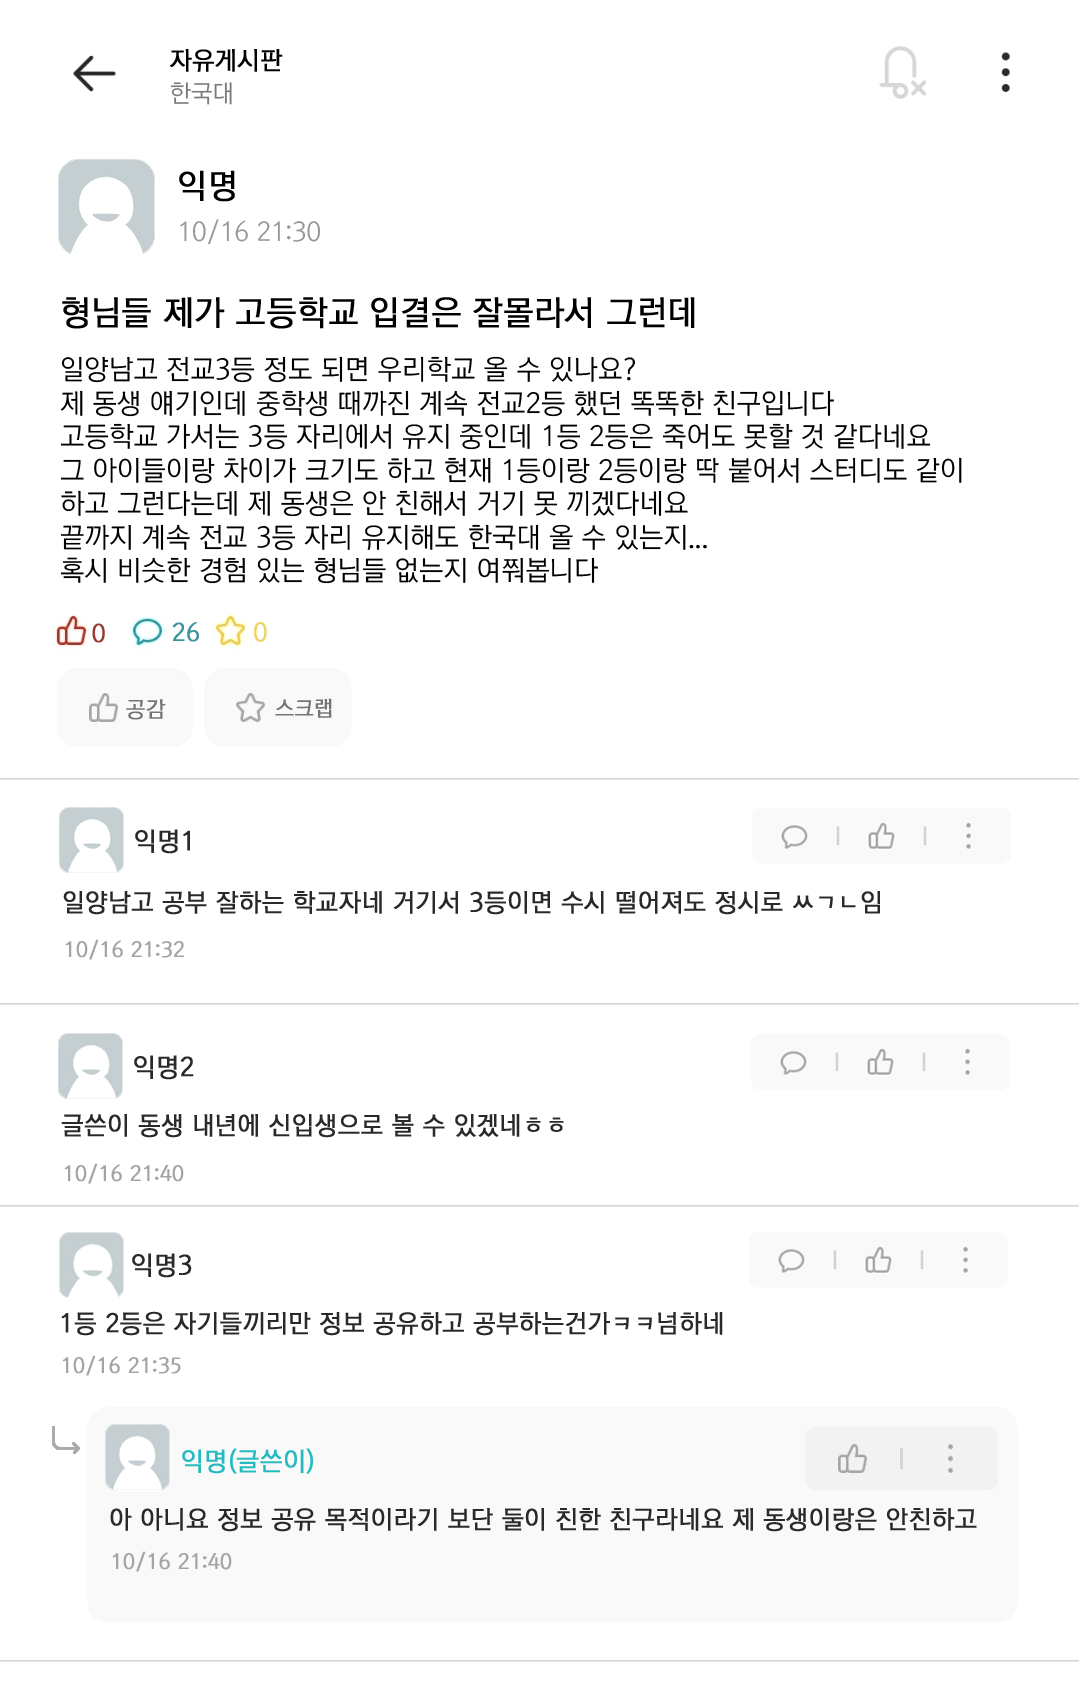 쏘니님 한국대 에브리타임에 가입하시겠습니까? [예/아니요] | 인스티즈